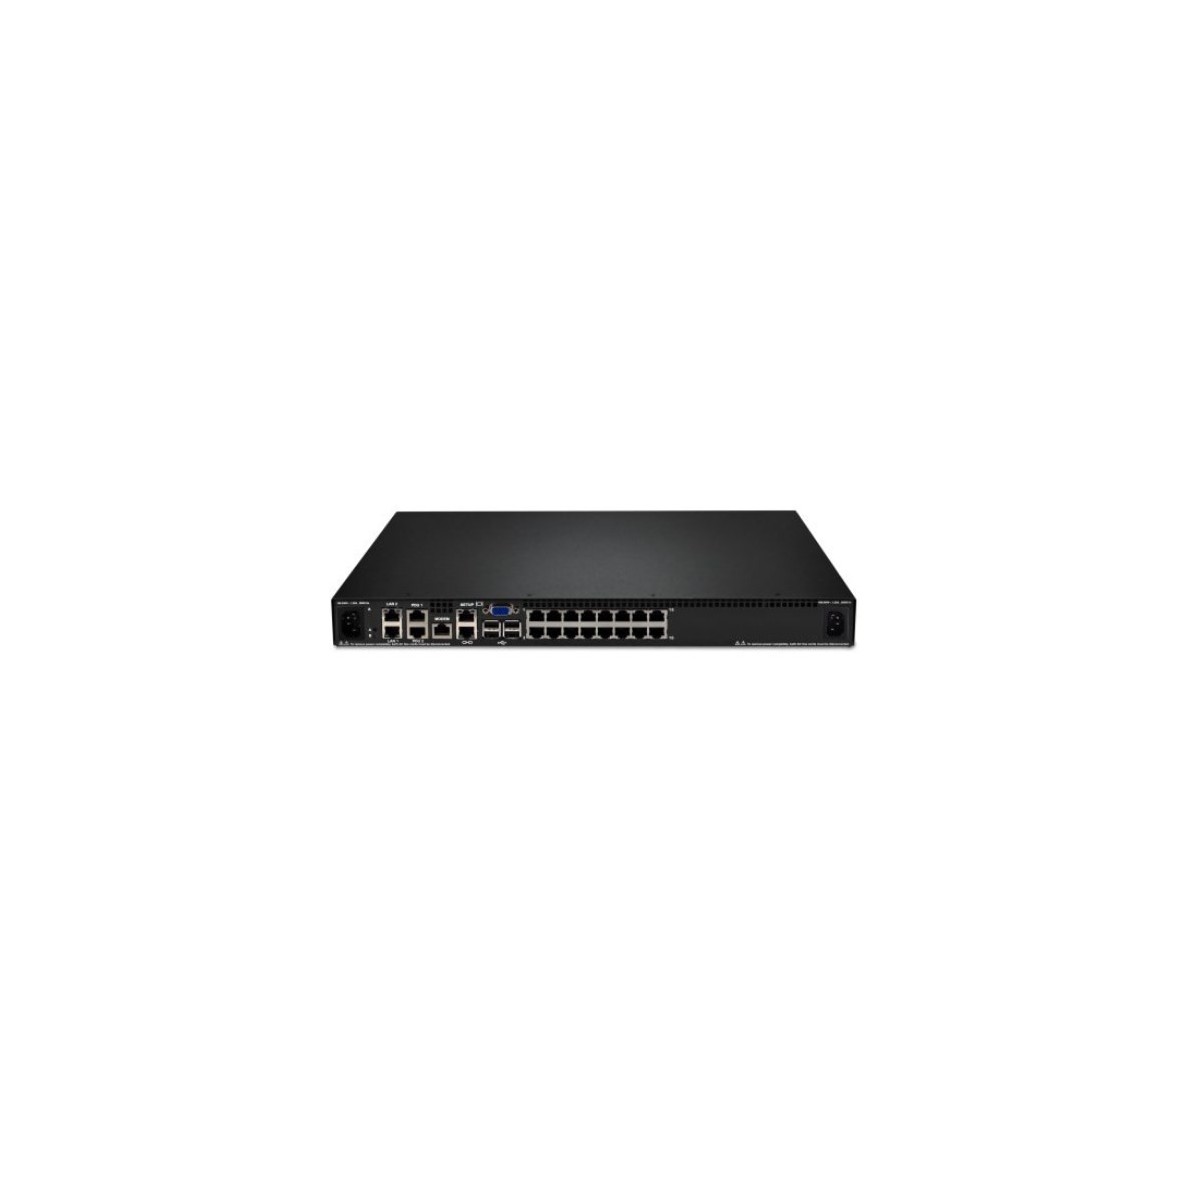 Lenovo 1754D1X - 1600 x 1200 pixels - Ethernet LAN - Rack mounting - 18 W - 1U - Black